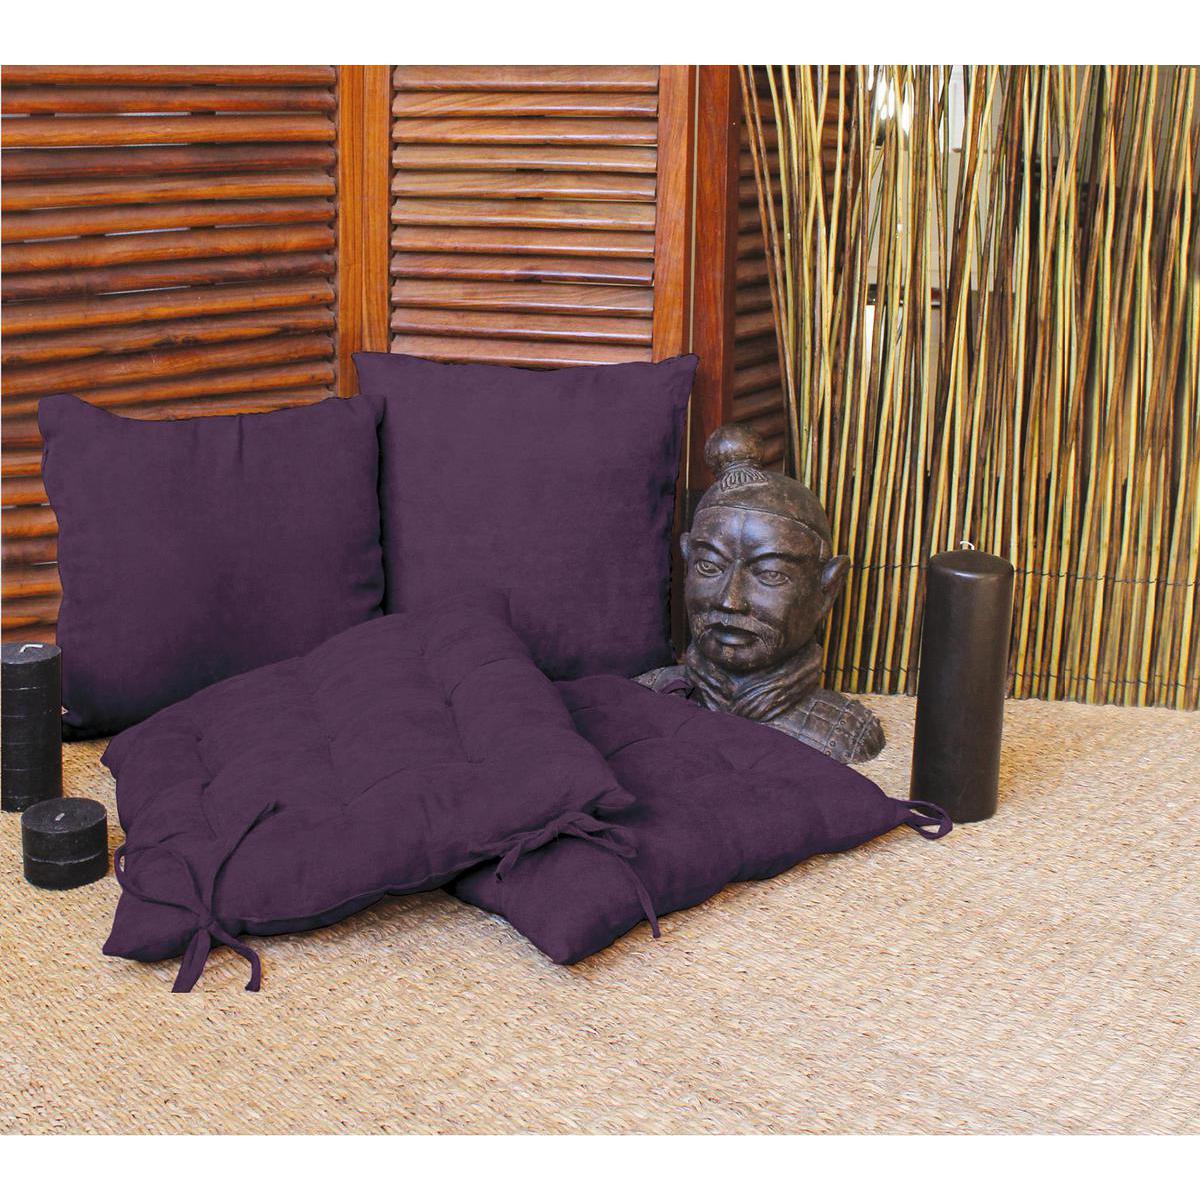 Galette de chaise - 100% Polyester - 40 x 40 cm - Violet aubergine